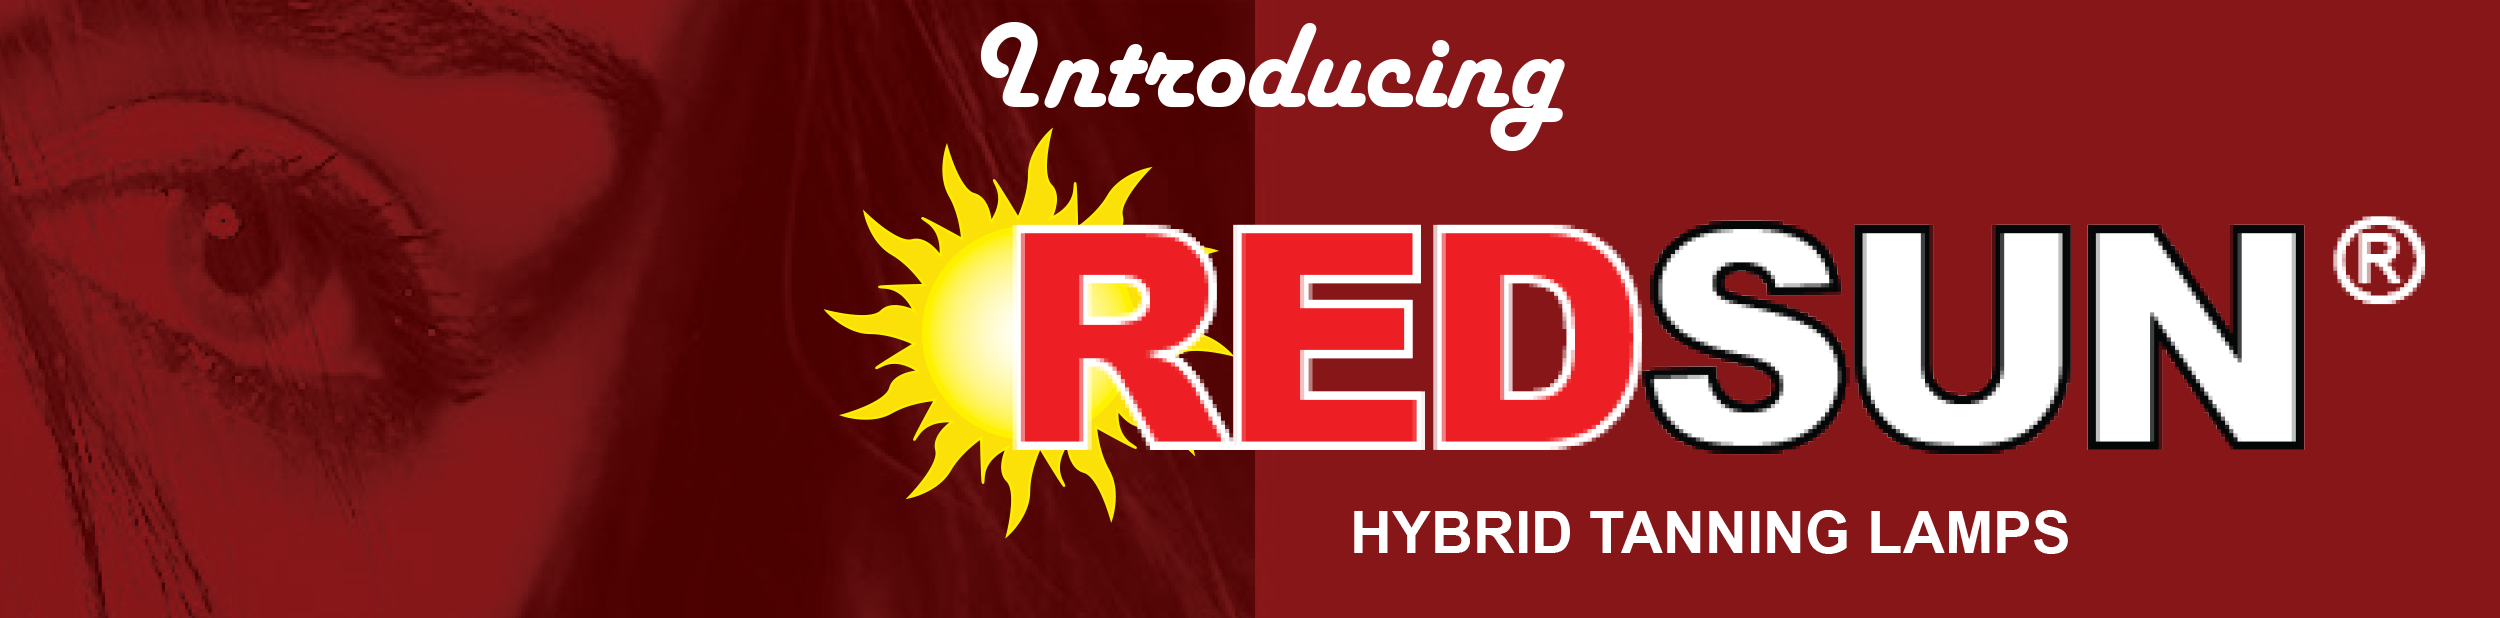 introducing redsun hybrid tanning lamps